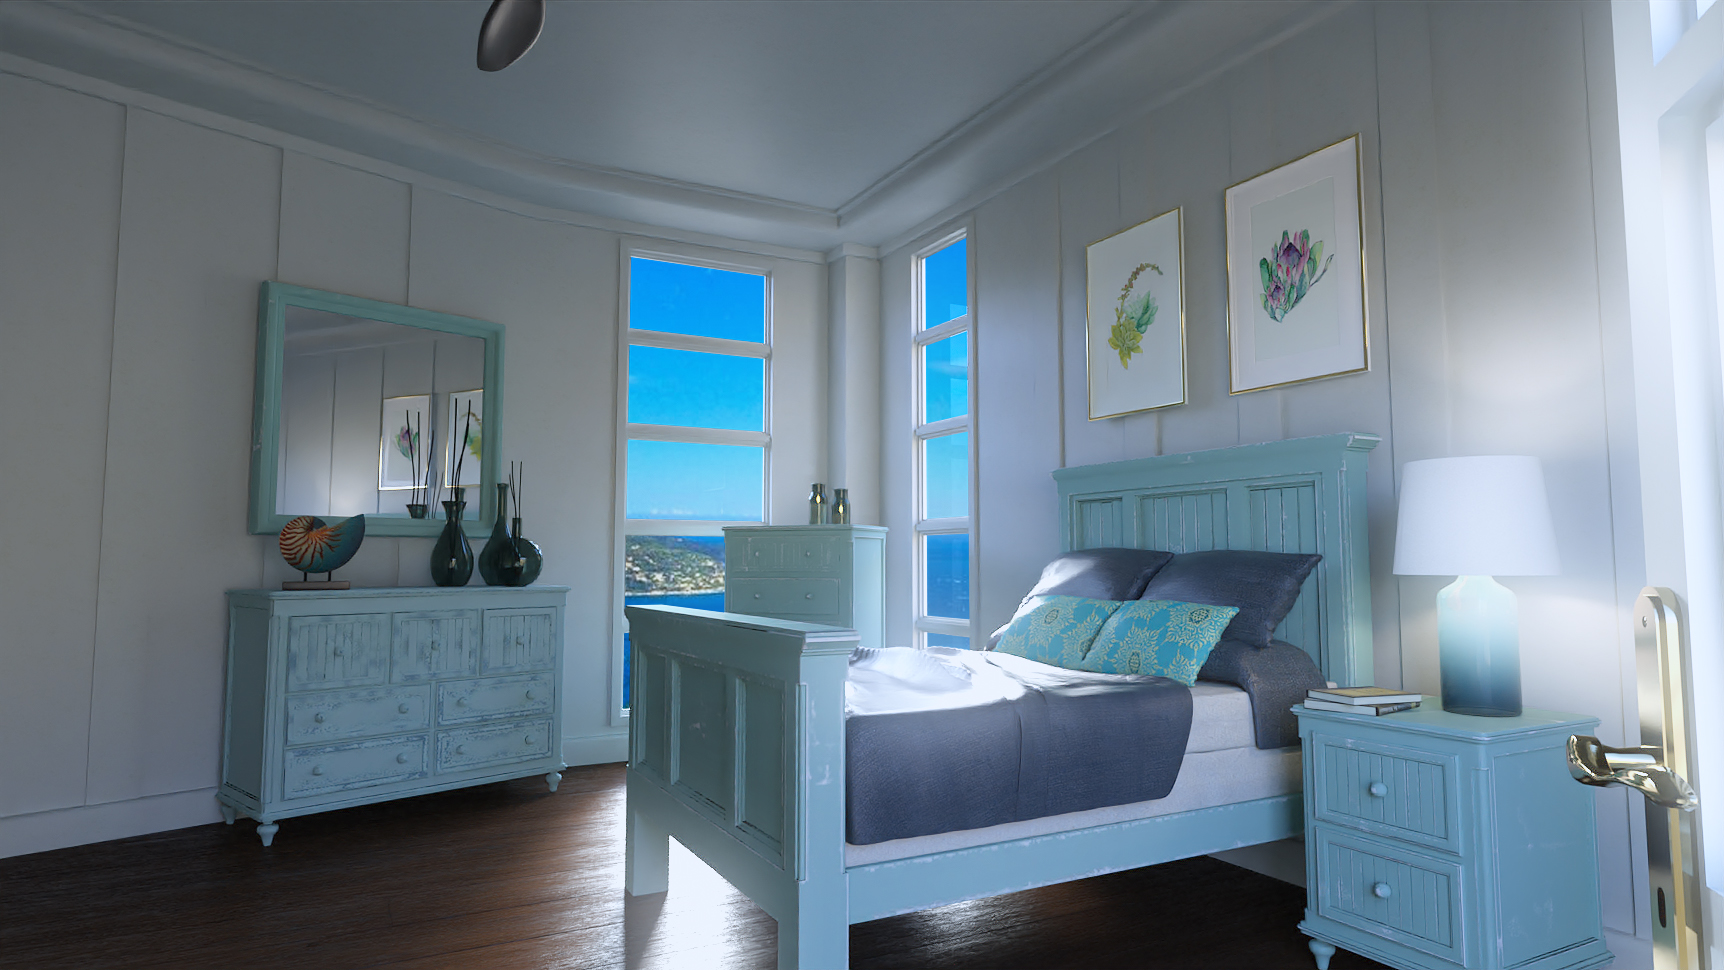 Monaco Bedroom by: , 3D Models by Daz 3D